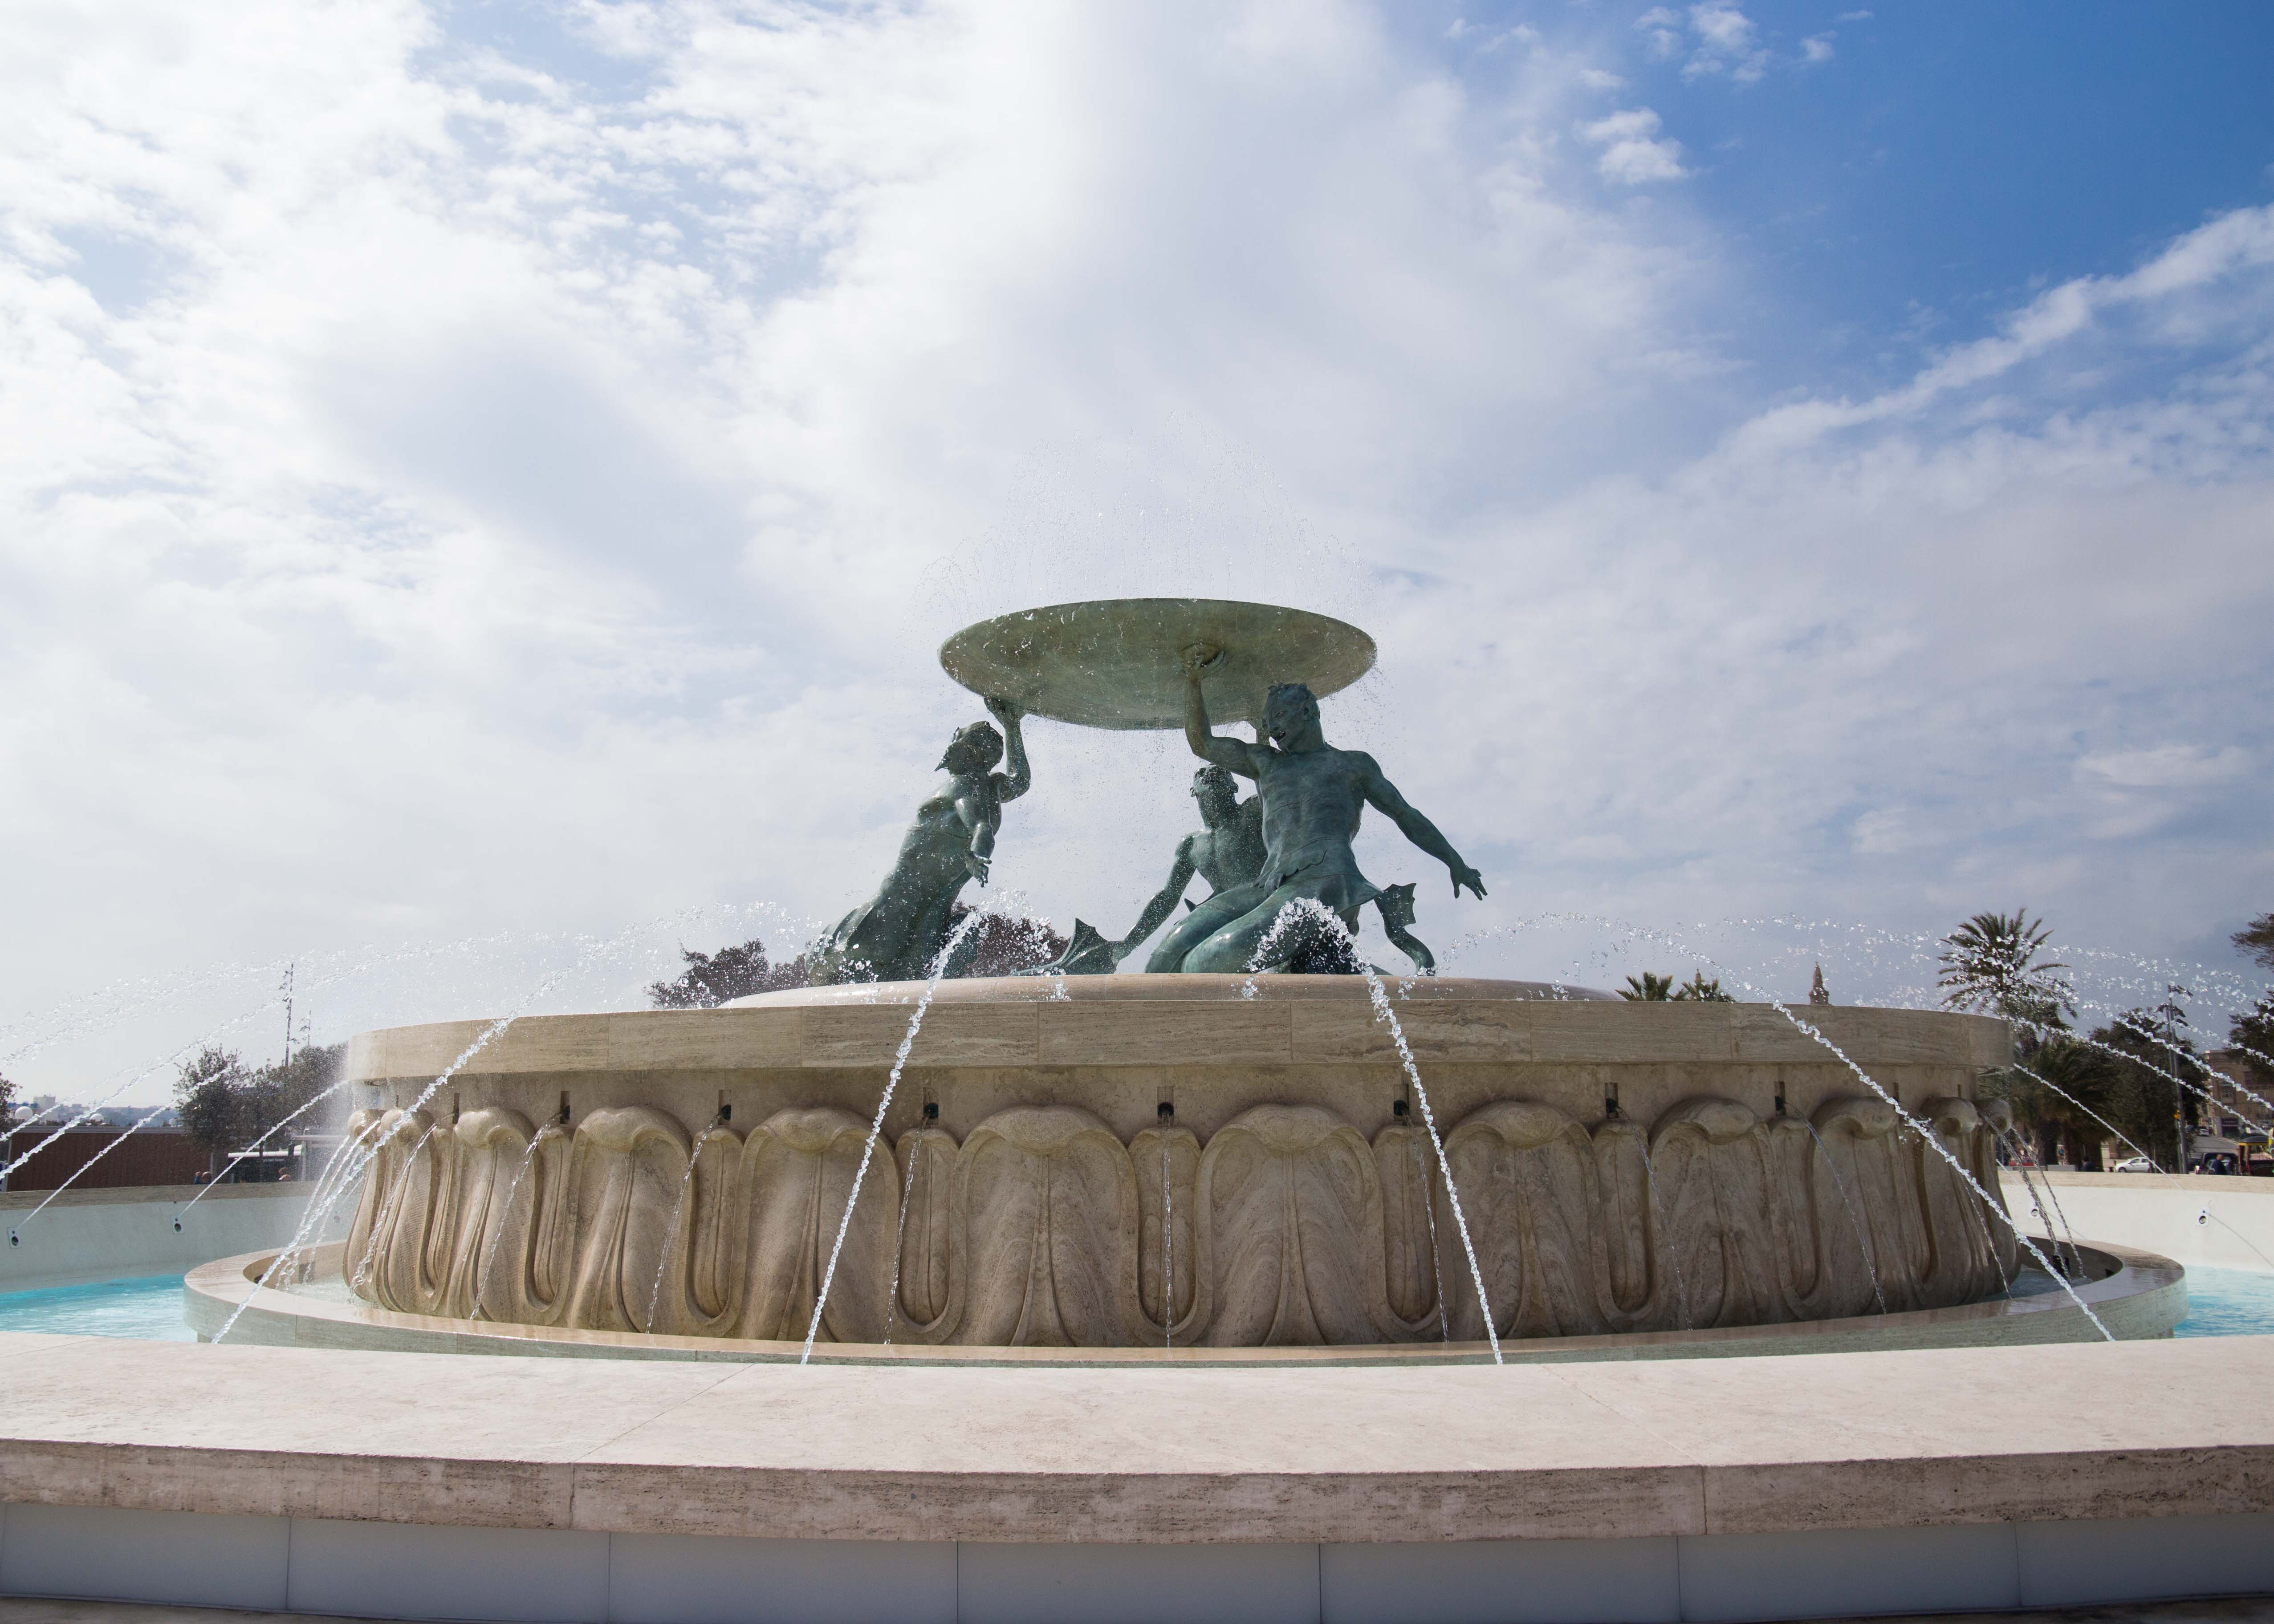 Where to visit in Valletta? Triton Fountain